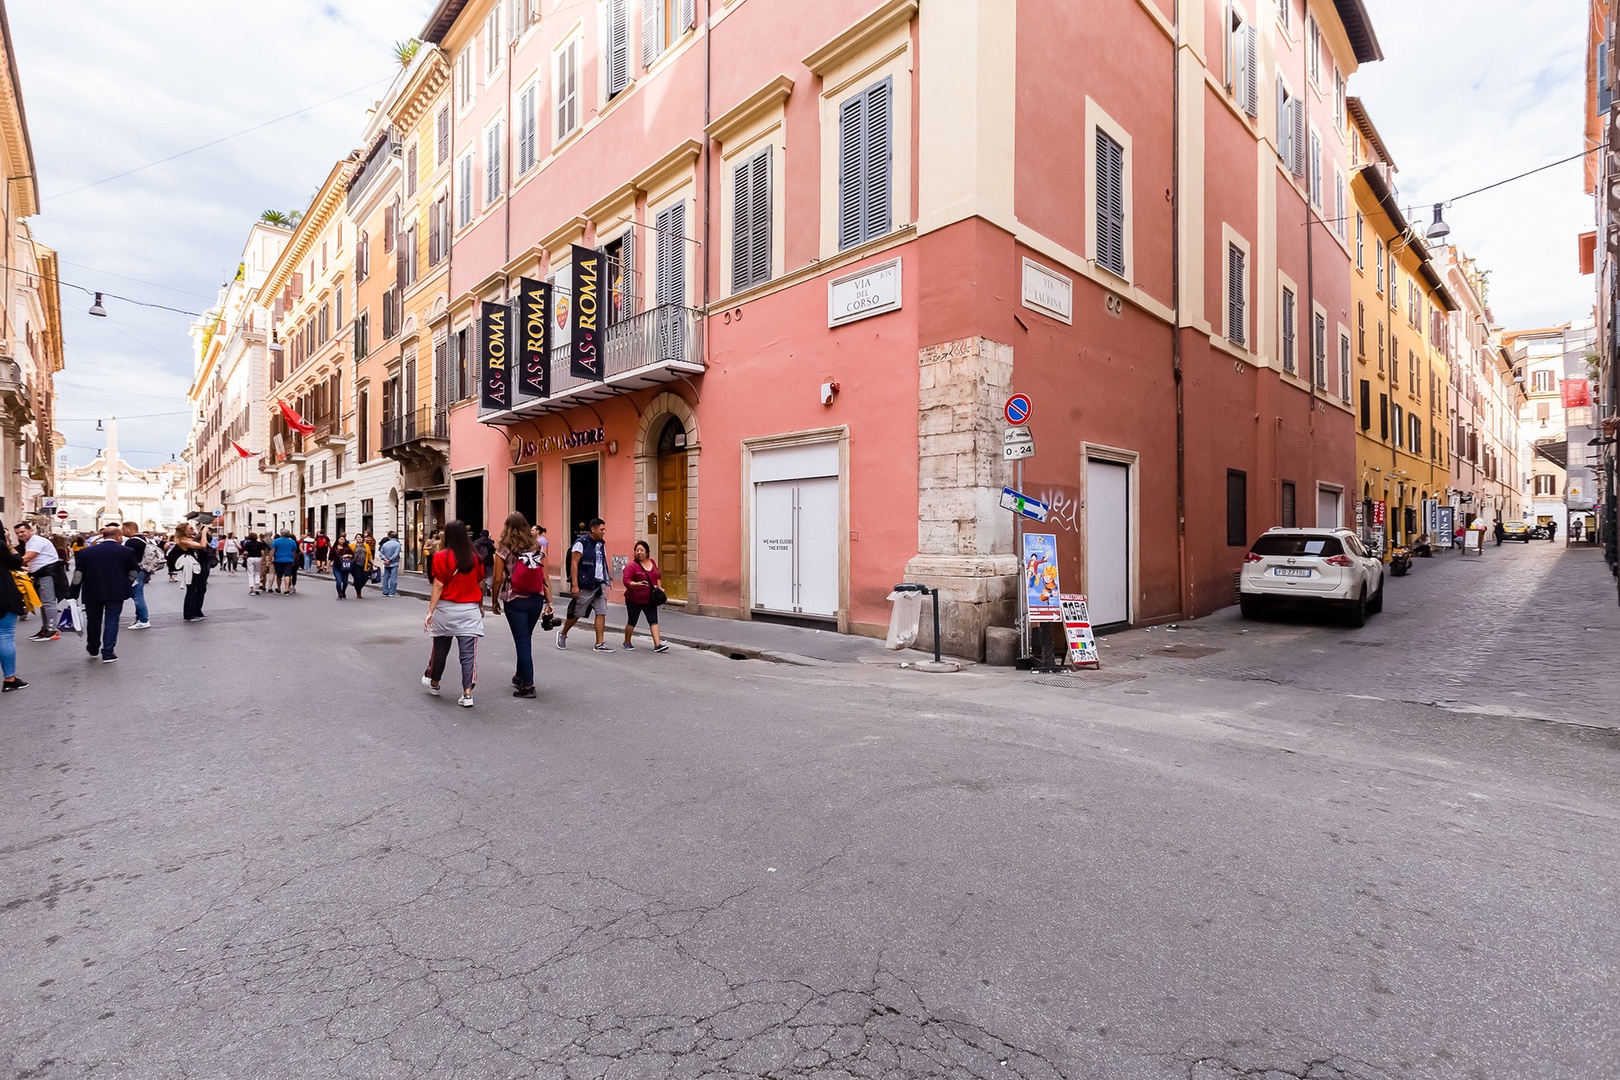 Nearby Via del Corso leads to Piazza del Popolo.